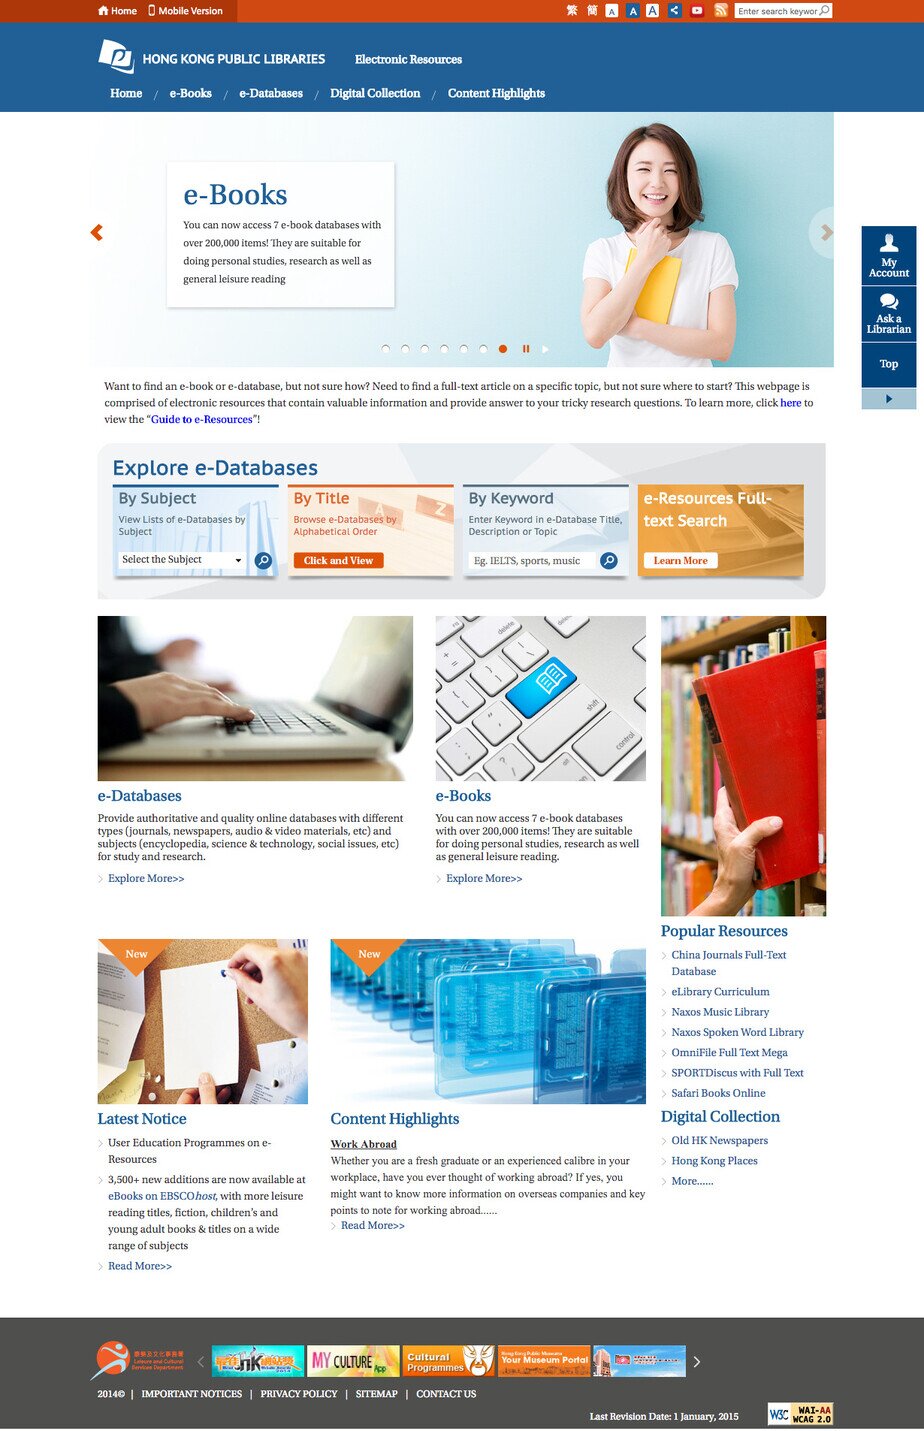 Hong Kong Public Libraries website screenshot for desktop version 4 of 10